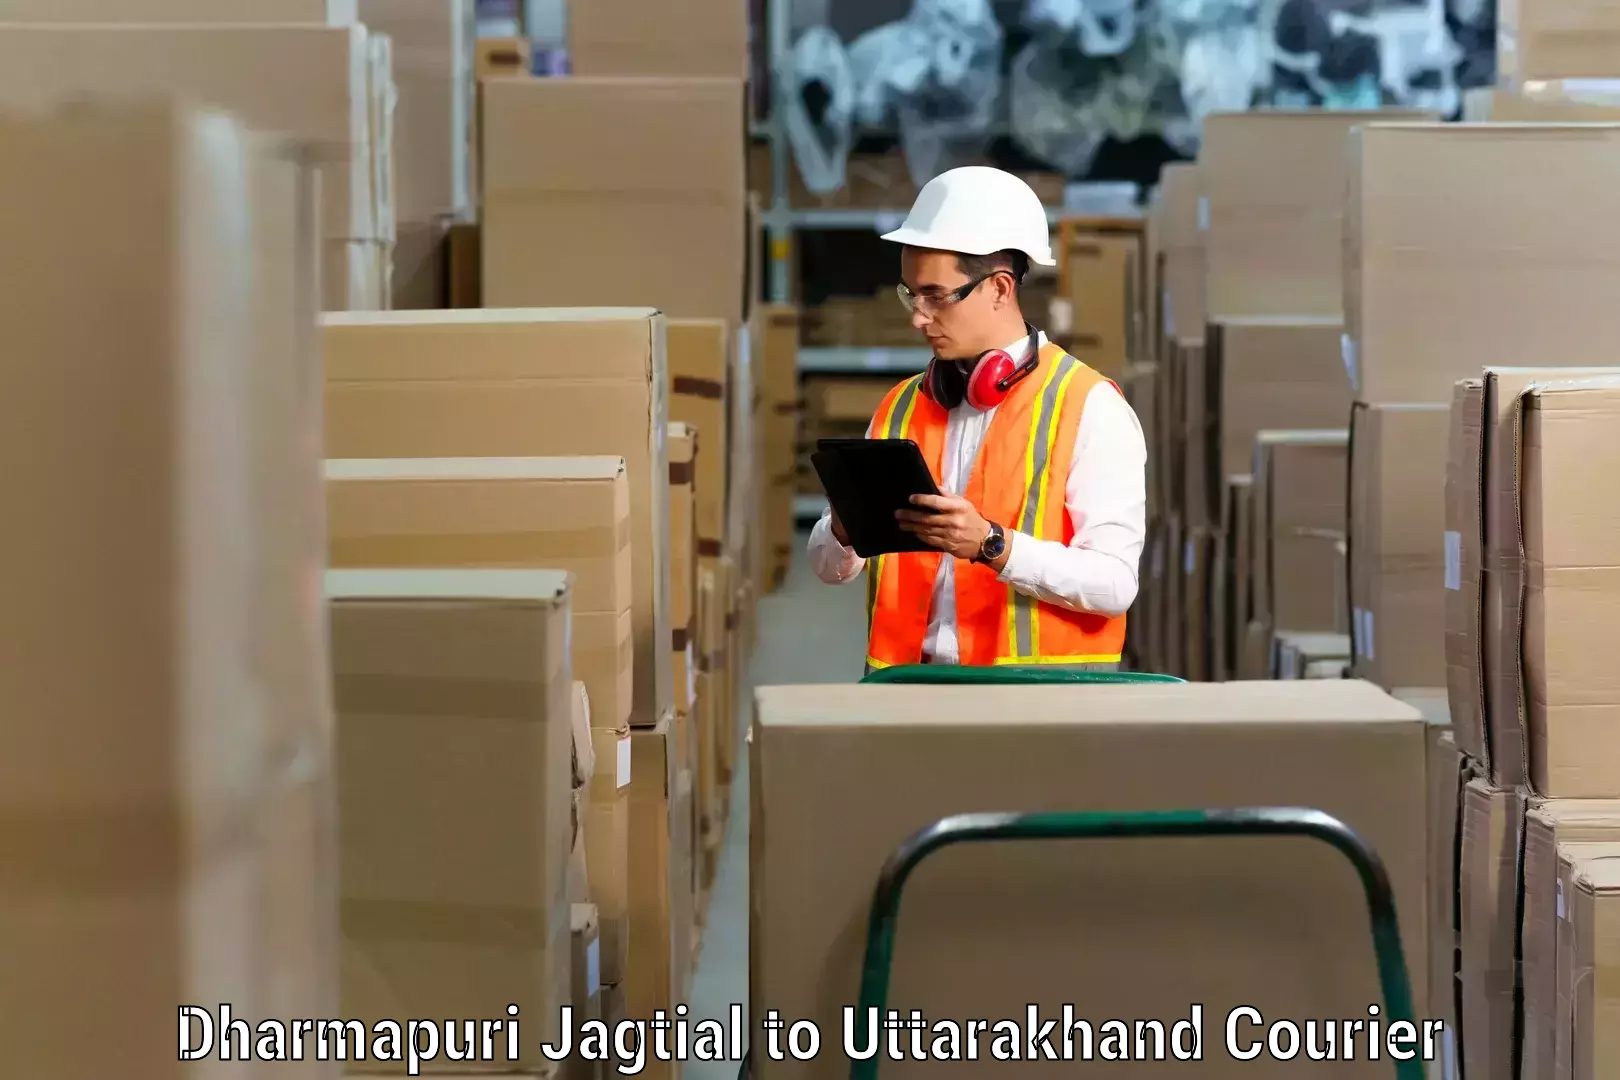 Furniture moving assistance Dharmapuri Jagtial to Kotdwara